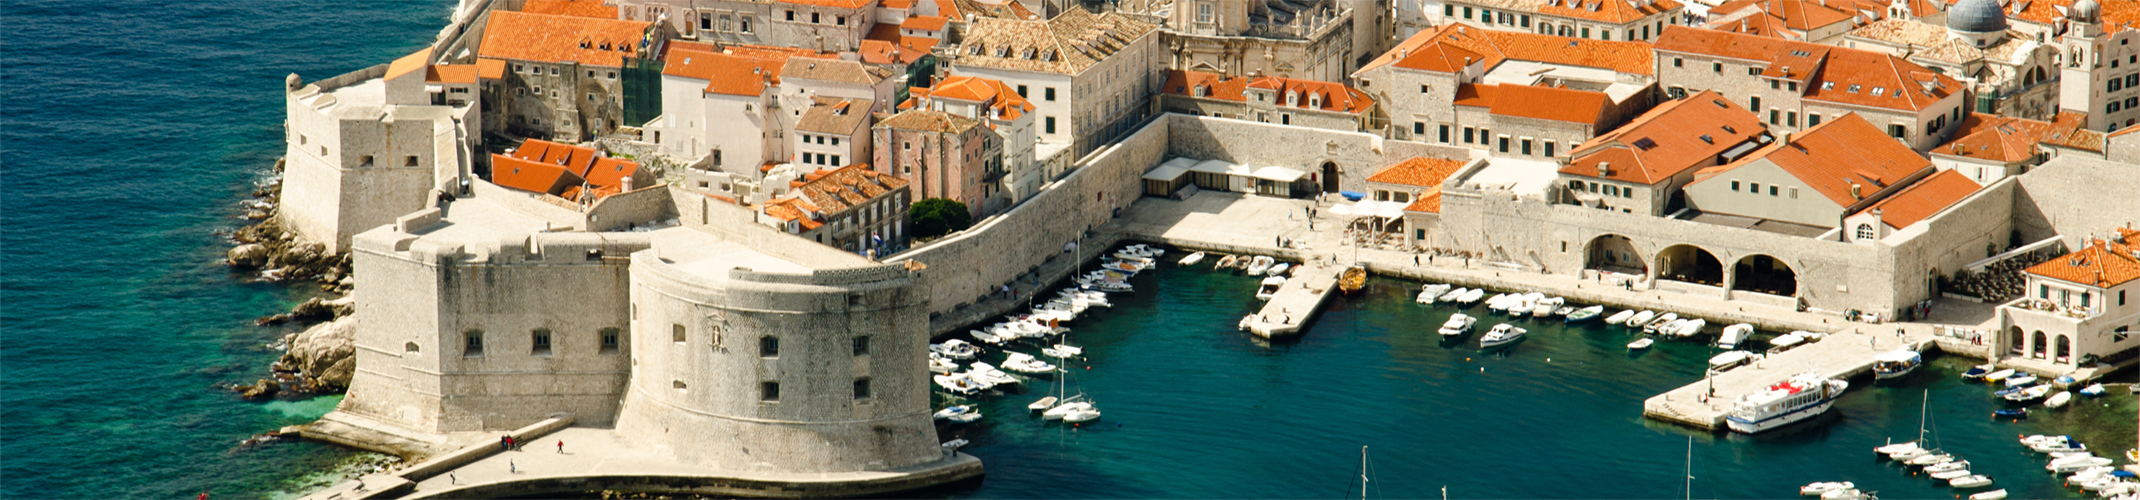 UNESCO Heritage Sites in Croatia